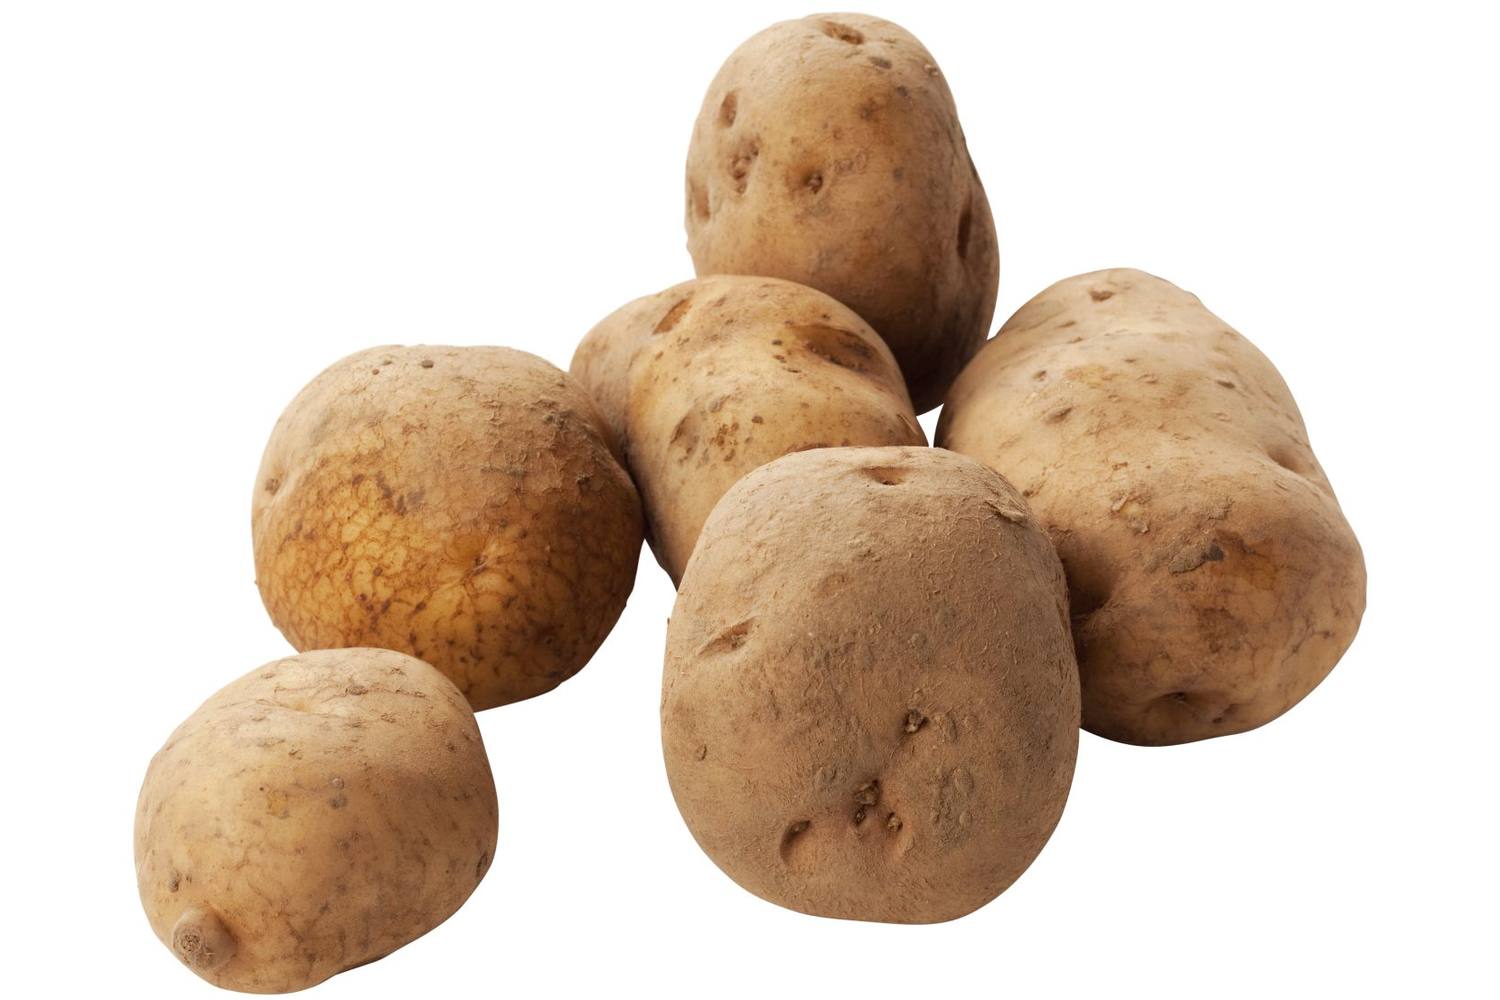 Eigenheimers aardappelen 2,5kg stuk 1